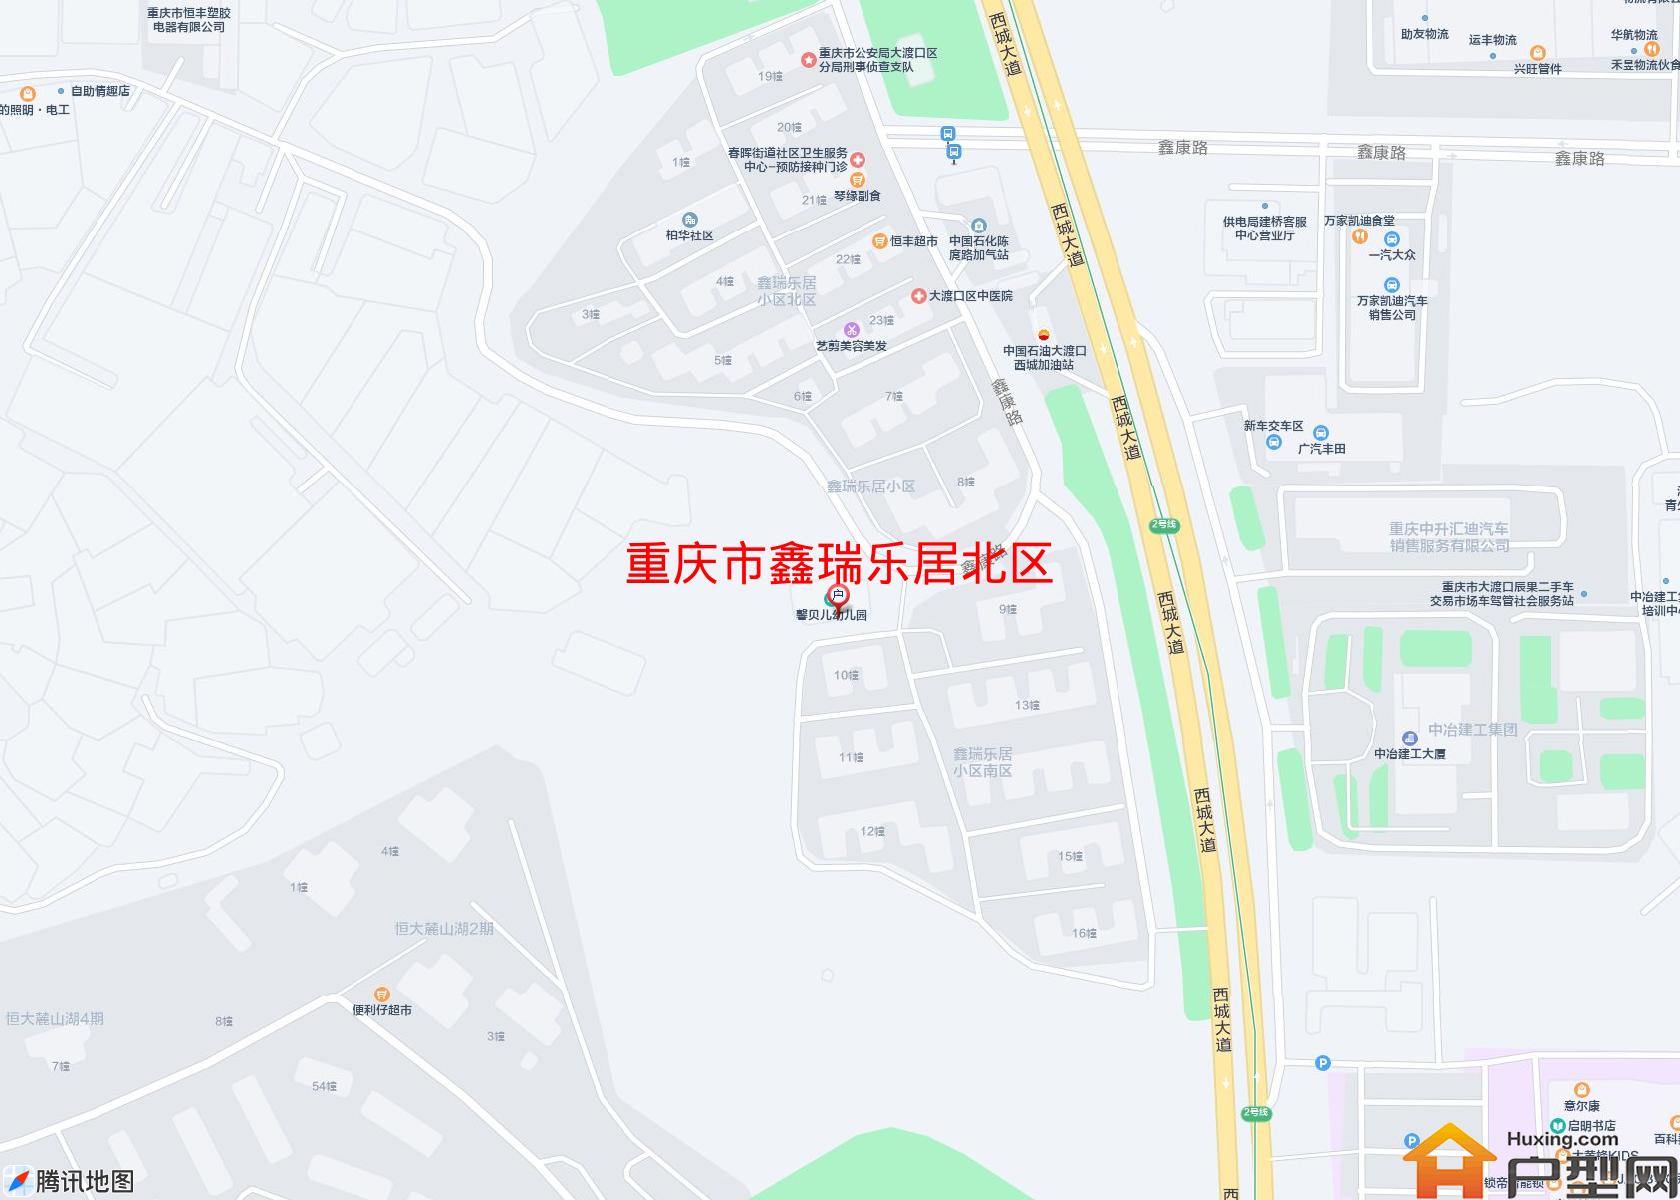 鑫瑞乐居北区小区 - 户型网